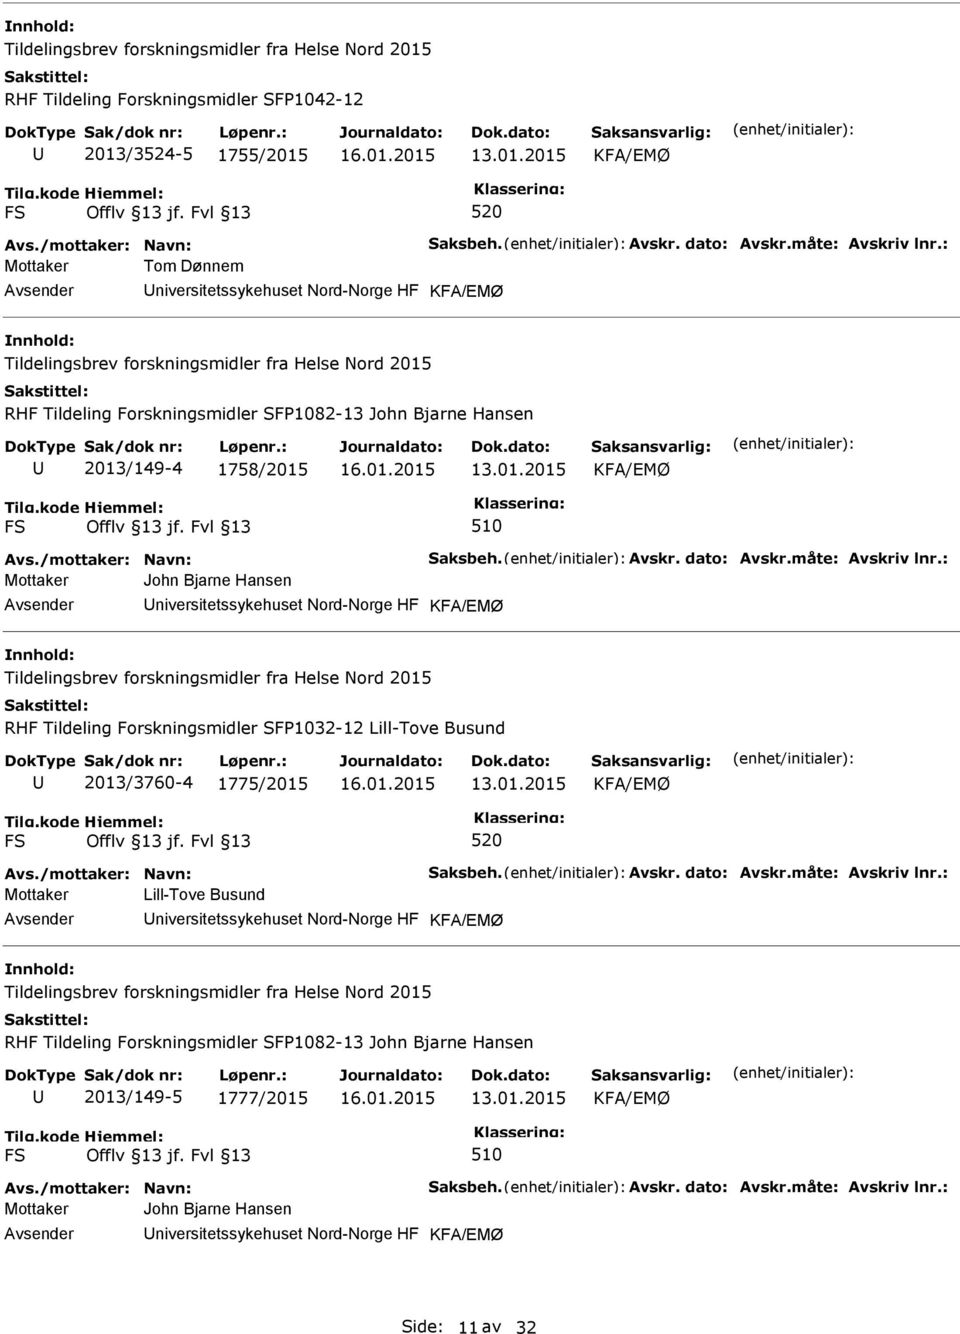 Tildeling Forskningsmidler SFP1032-12 Lill-Tove Busund 2013/3760-4 1775/2015 Mottaker Lill-Tove Busund niversitetssykehuset Nord-Norge HF RHF